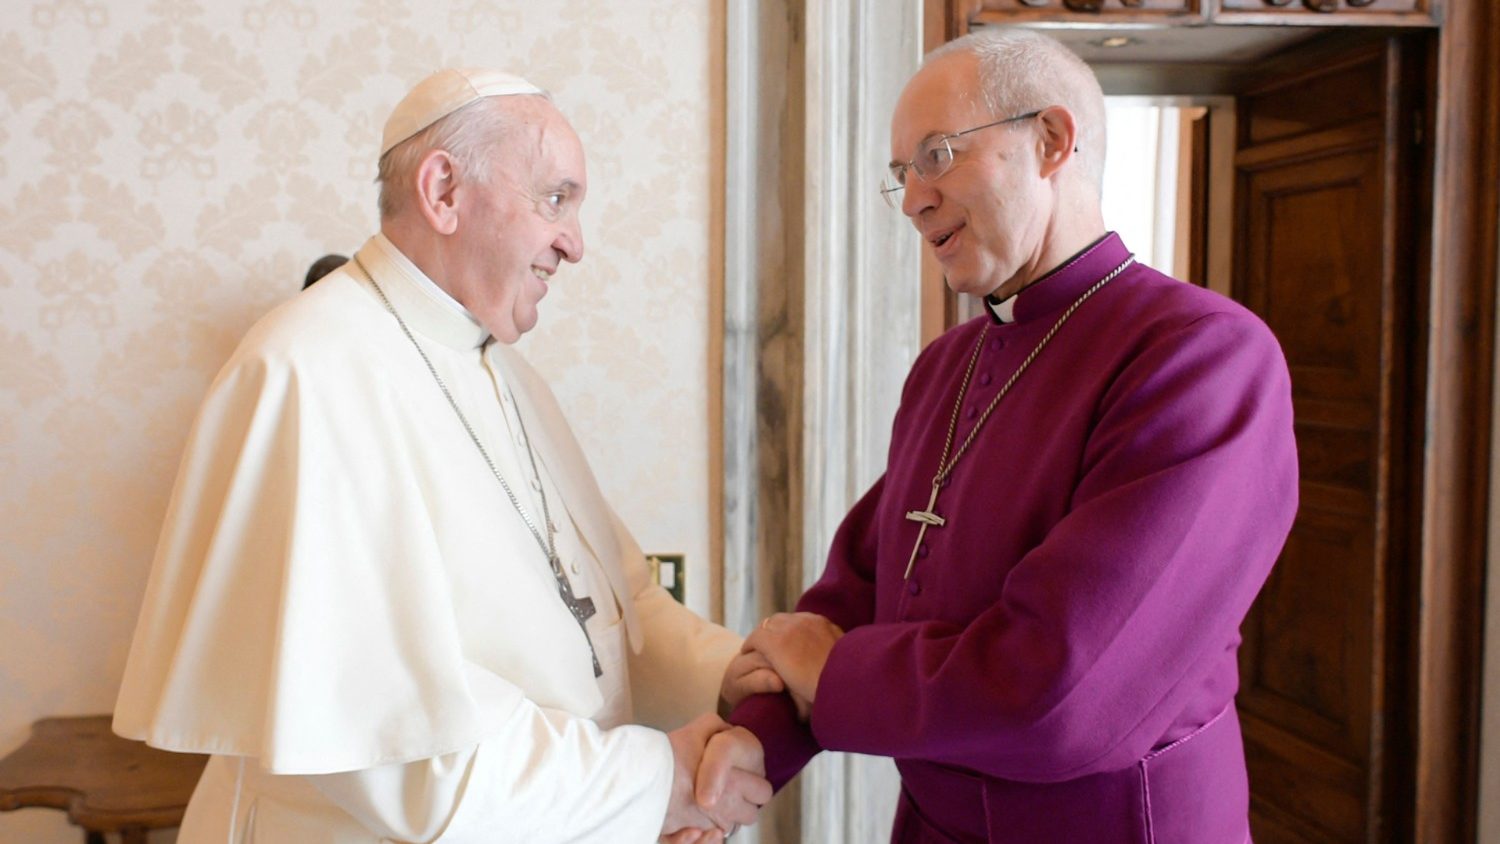 Arzobispo Welby: La Iglesia es sinodal cuando camina junta, sirviendo, no  dominando - Vatican News